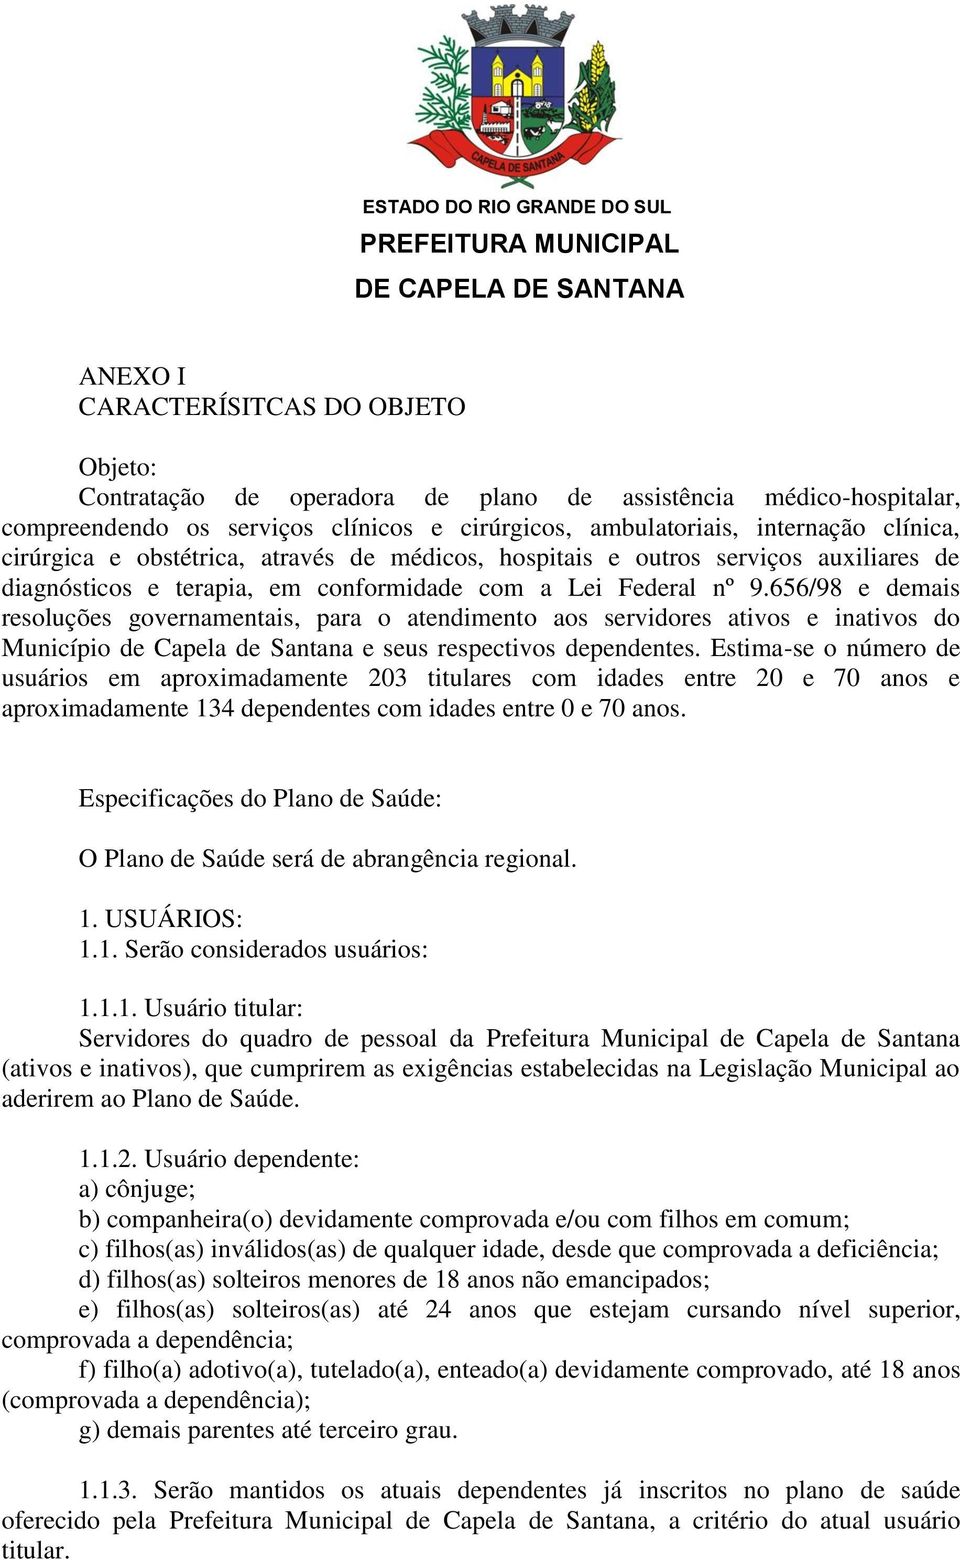 656/98 e demais resoluções governamentais, para o atendimento aos servidores ativos e inativos do Município de Capela de Santana e seus respectivos dependentes.